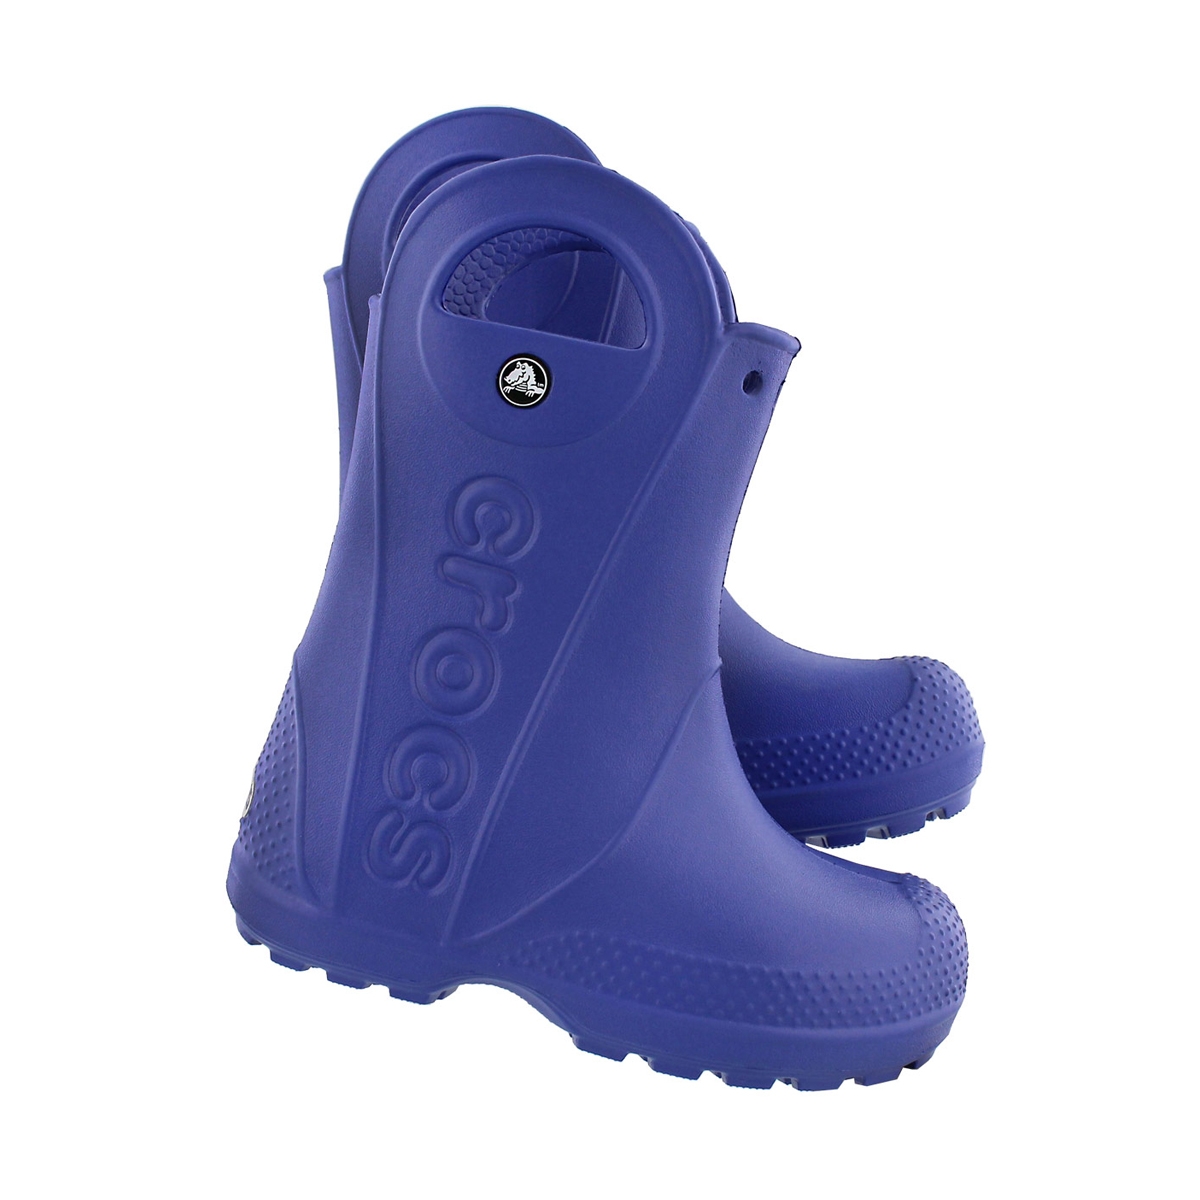 Kids' HANDLE IT cerulean blu waterproof rain boots